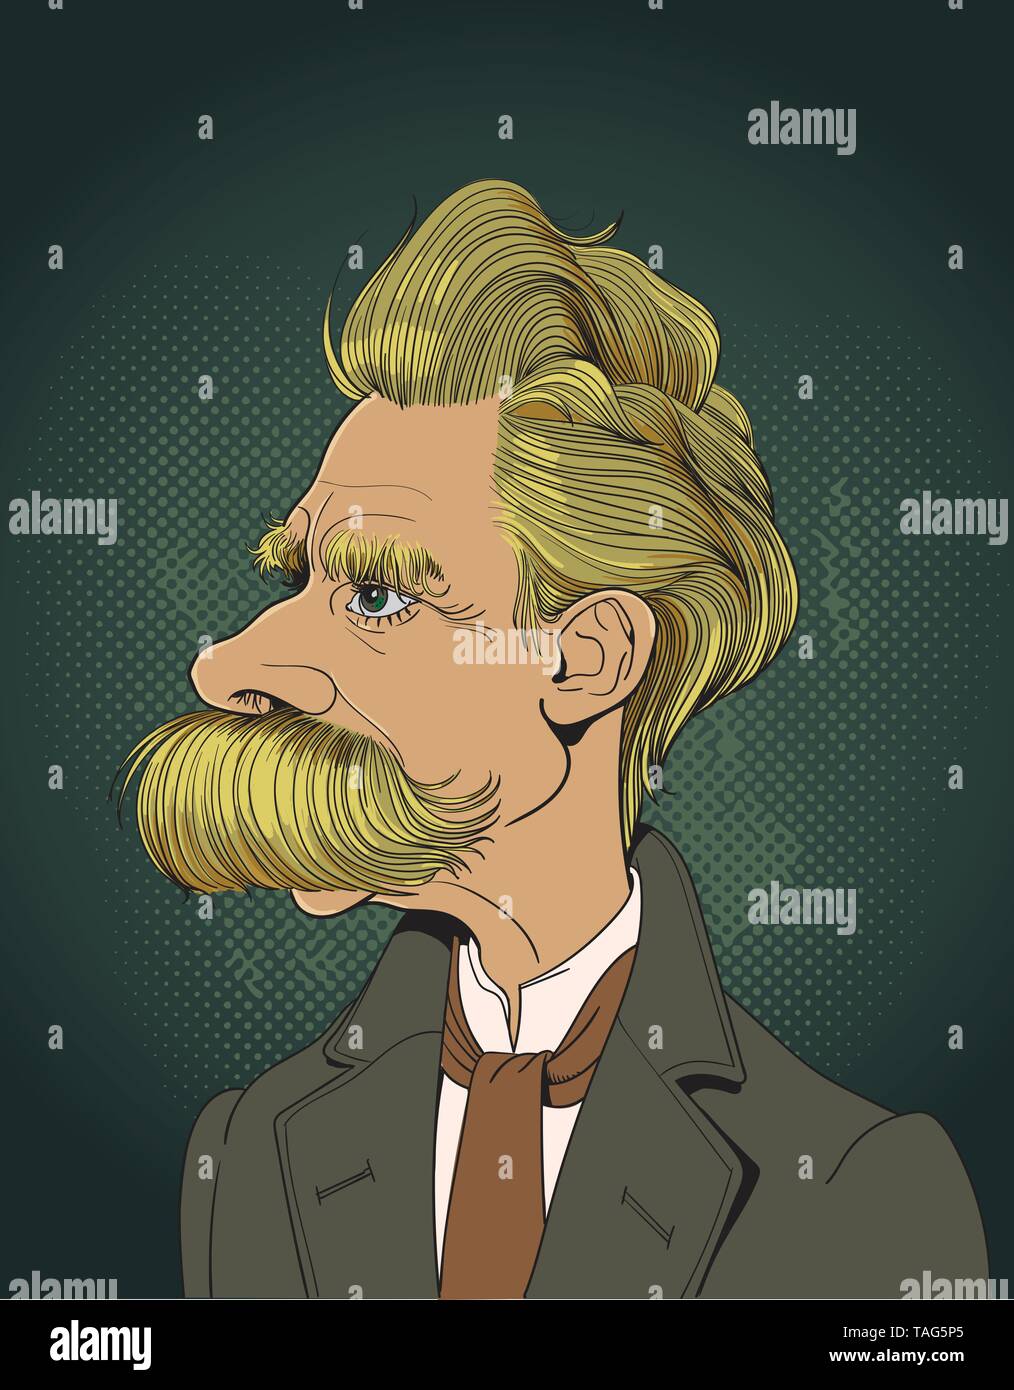 Friedrich Nietzsche (1844-1900) Porträt in Line Art. Er war deutscher Philosoph, Philologe, Dichter, Komponist und klassischer Philologe. Bearbeitbare Layer. Stock Vektor